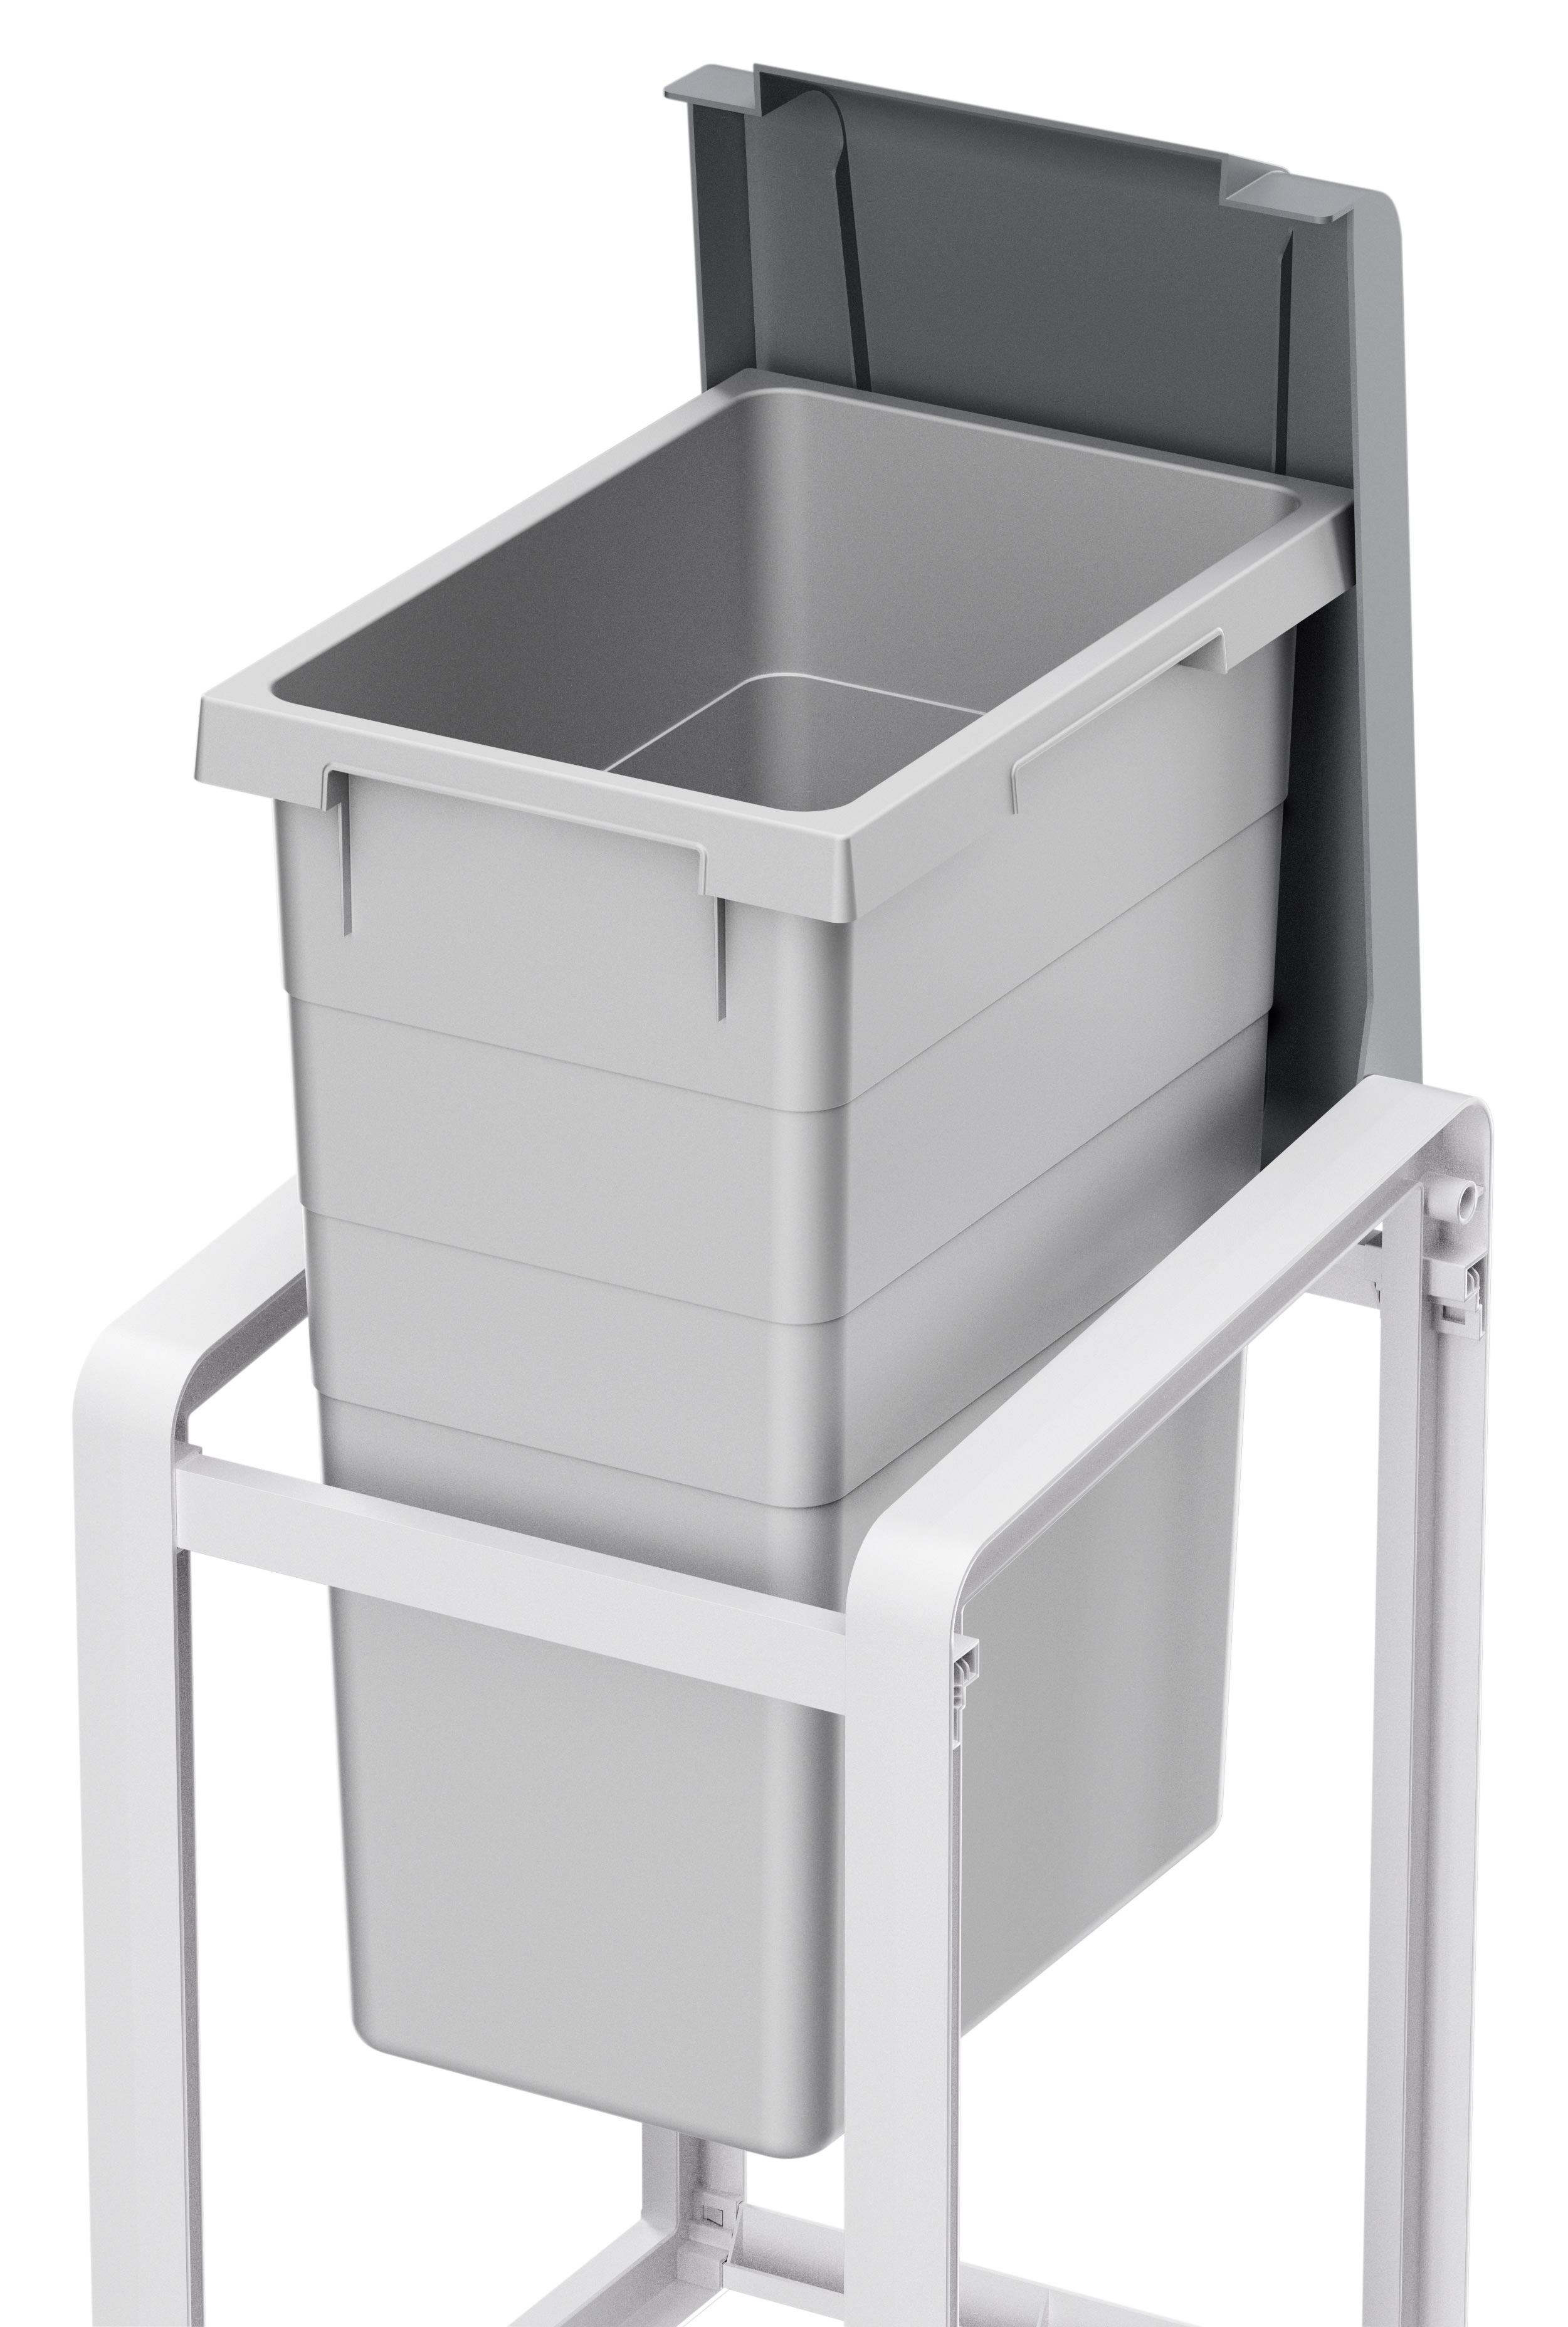 Фото товара Система раздельного хранения мусора, Hailo ProfiLine Öko XL 38 л, цвет серый, Правая